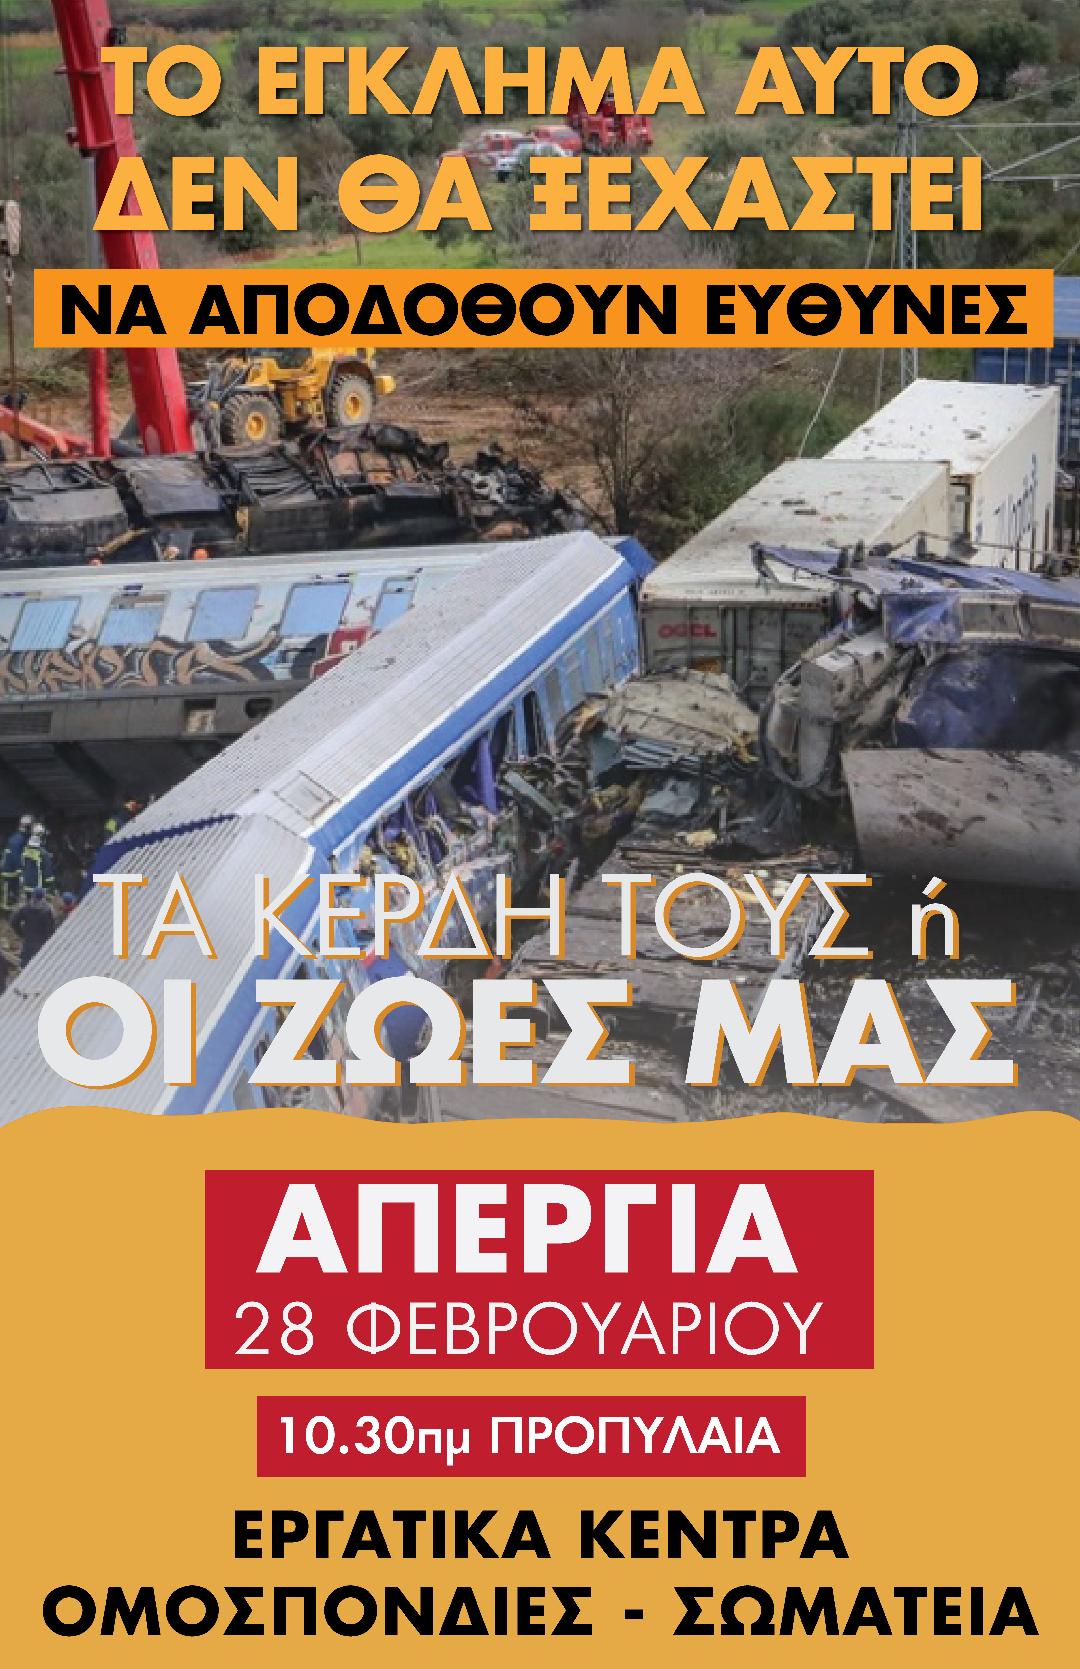 ΠΑΜΕ: Απεργιακή συγκέντρωση στην Αθήνα στις 28 Φεβρουαρίου στα Προπύλαια